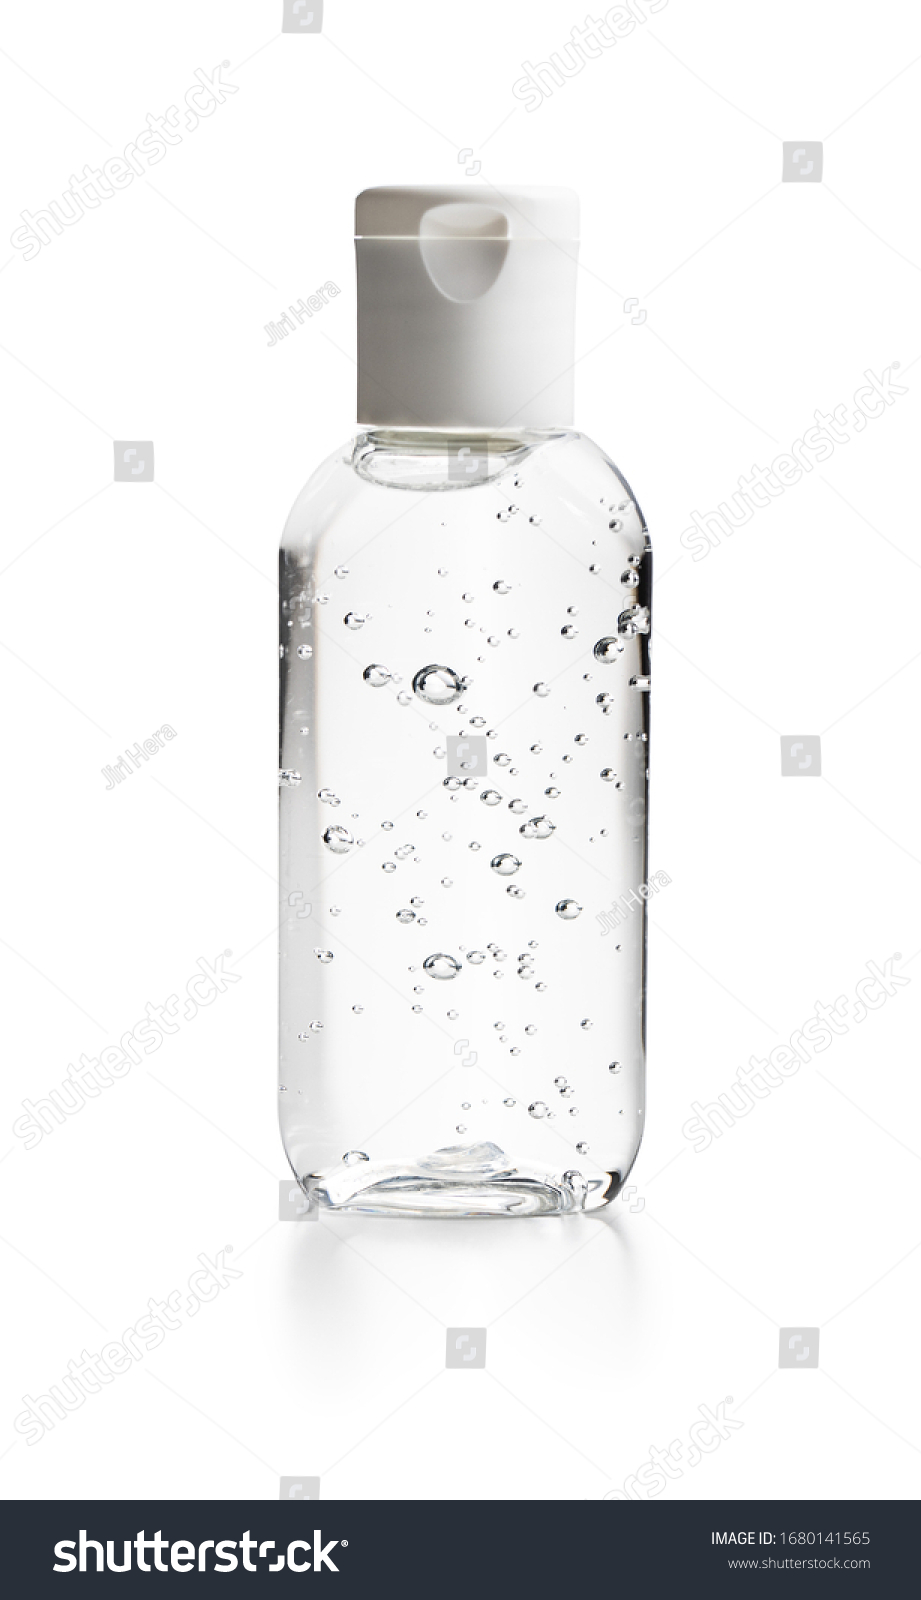 Coronavirus prevention hand sanitizer gel in bottle. Hand disinfectant gel isolated on white background. #1680141565